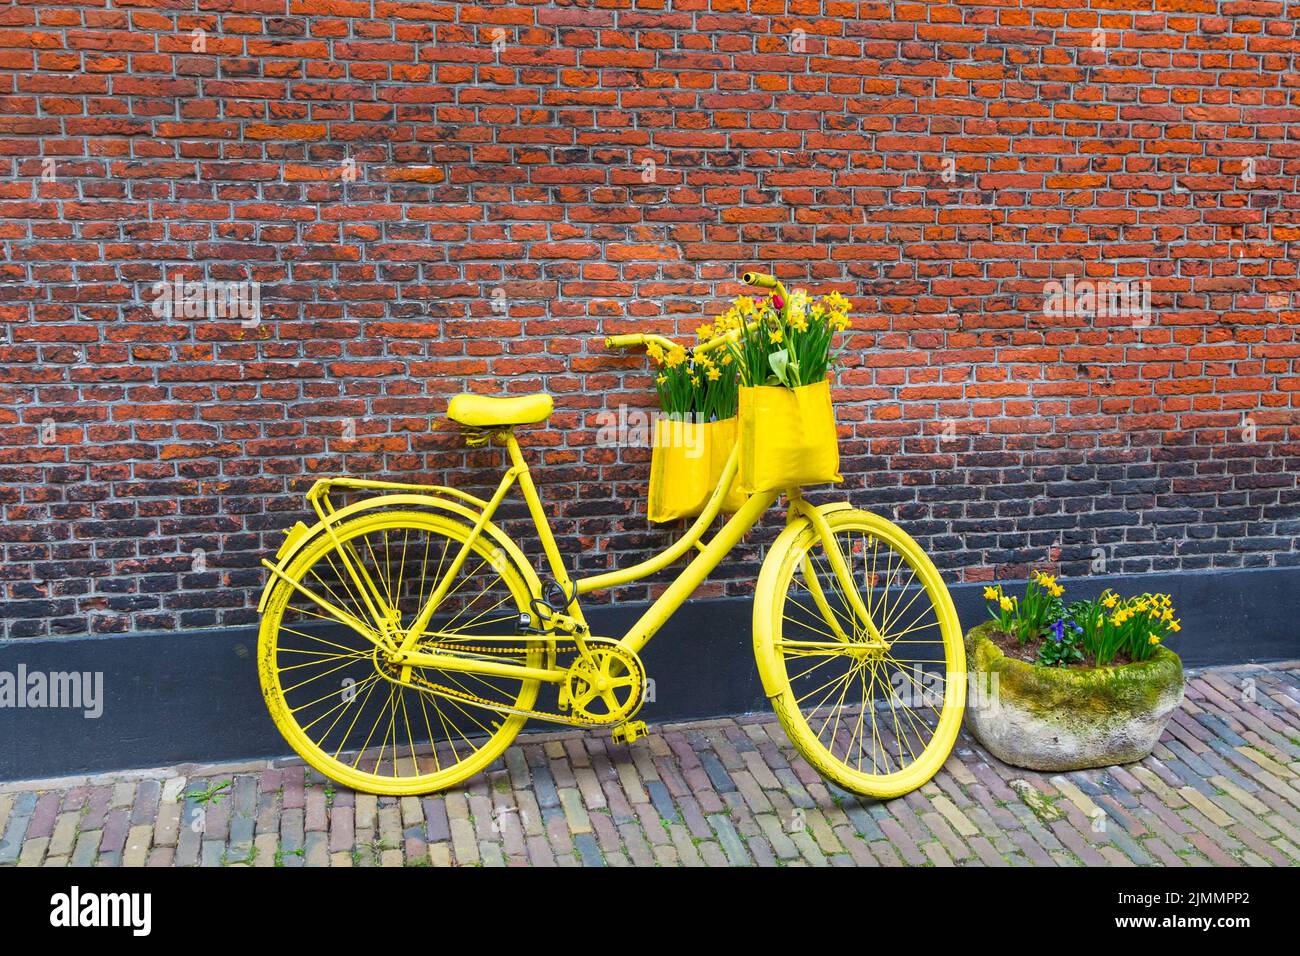 Vibrierende gelbe Fahrrad mit Korb von Narzissen Blumen auf rustikalen Backstein Wand Hintergrund Stockfoto